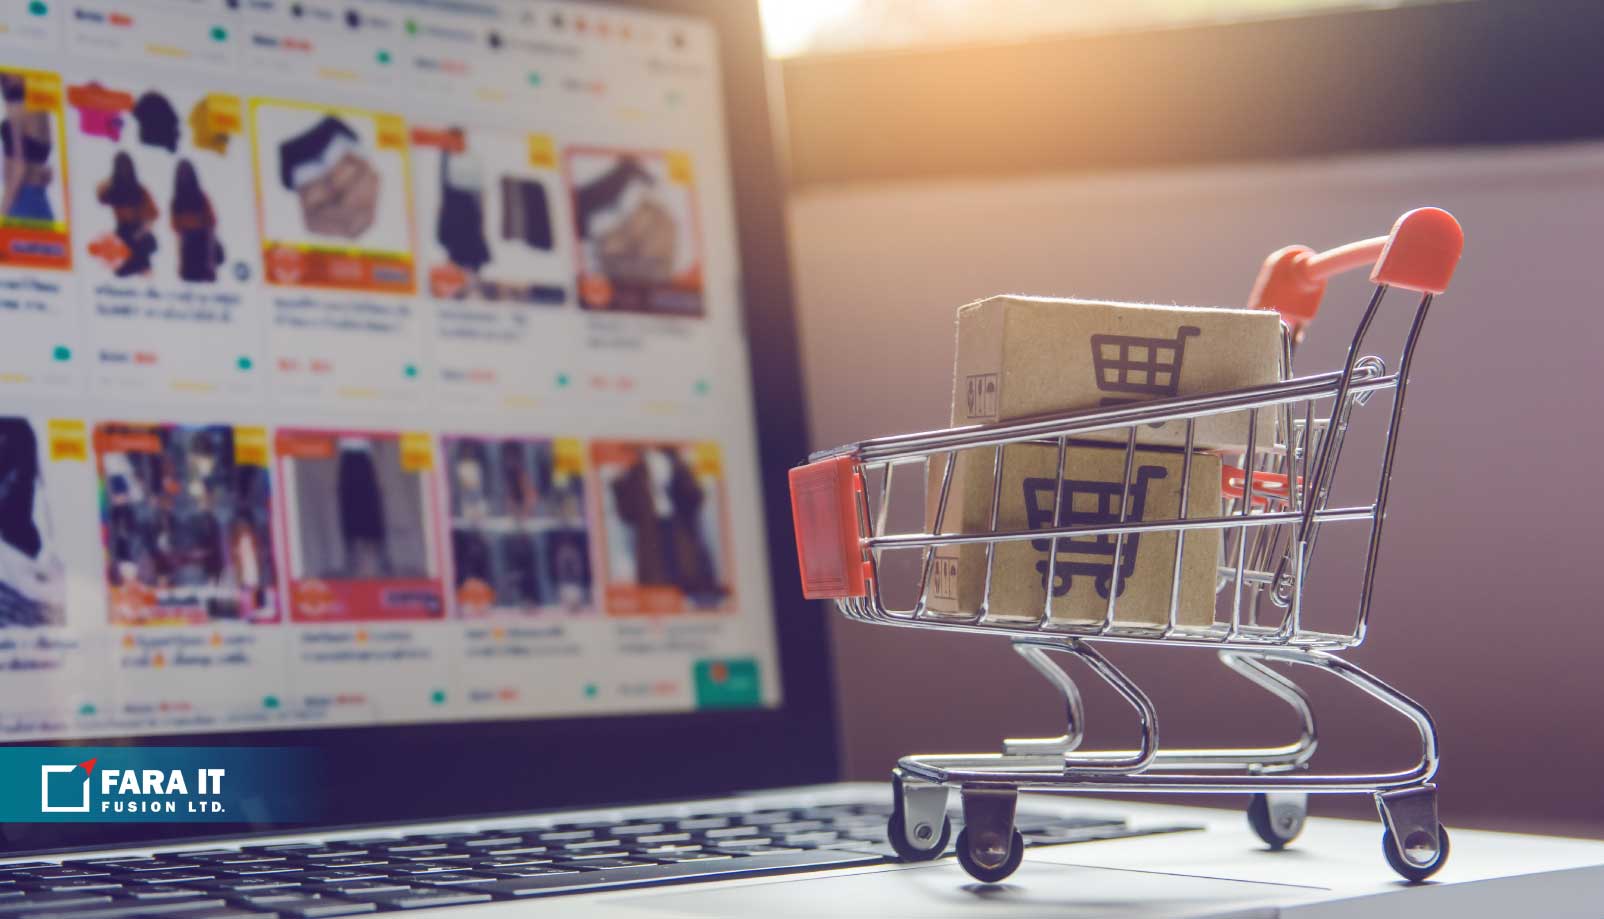 E-commerce Website